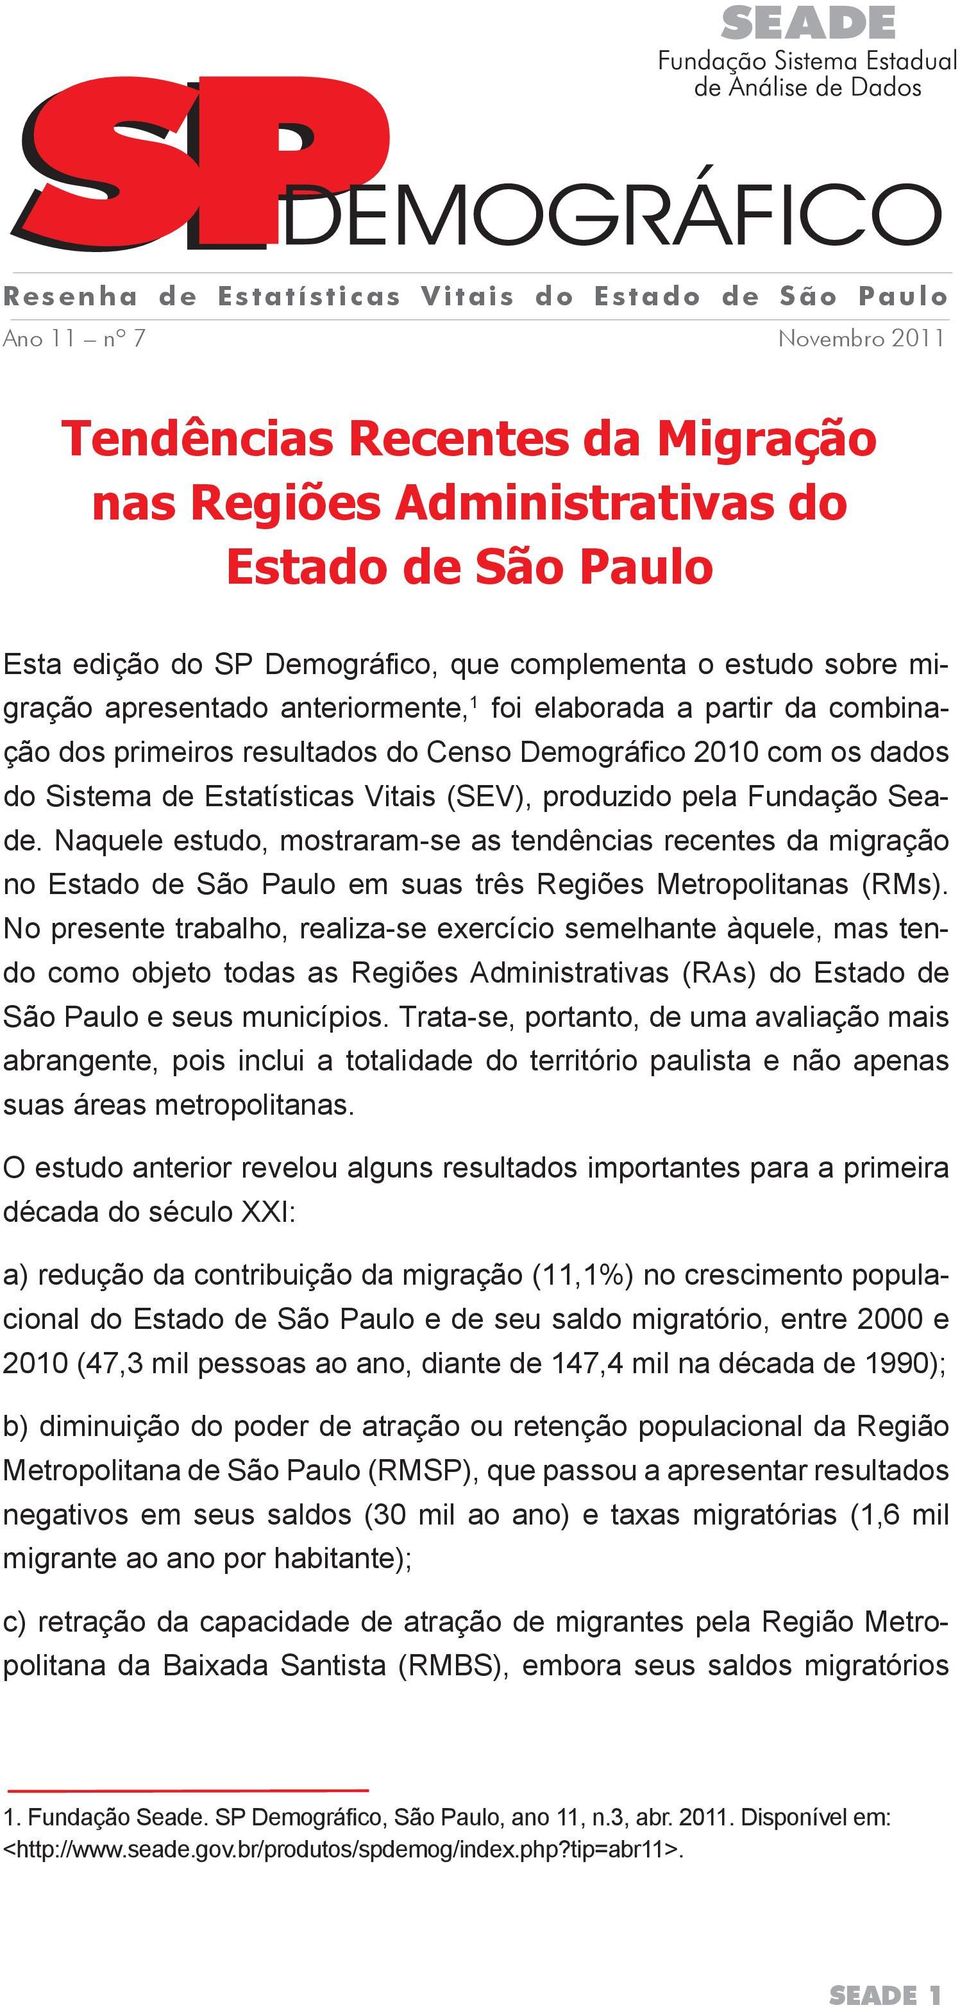 (SEV), produzido pela Fundação Seade. Naquele estudo, mostraram-se as tendências recentes da migração no Estado de São Paulo em suas três Regiões Metropolitanas (RMs).